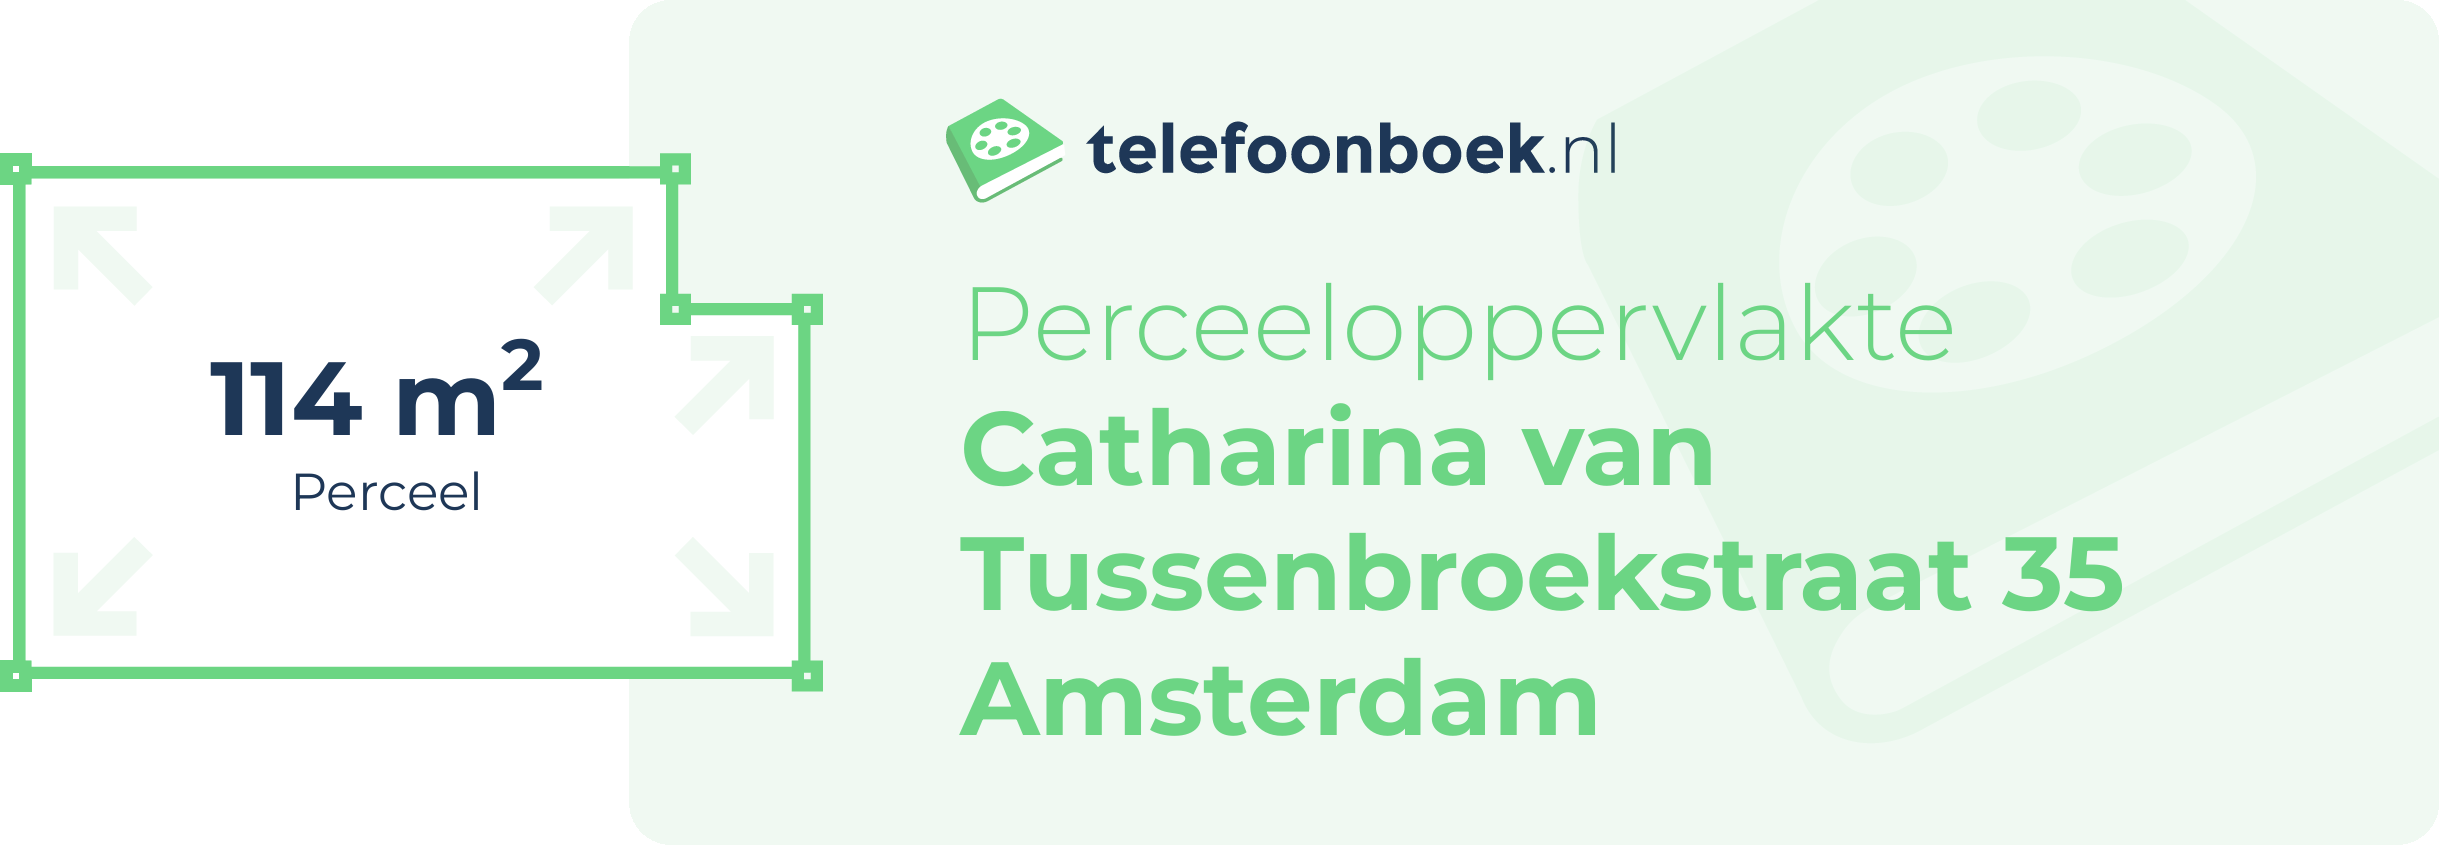 Perceeloppervlakte Catharina Van Tussenbroekstraat 35 Amsterdam